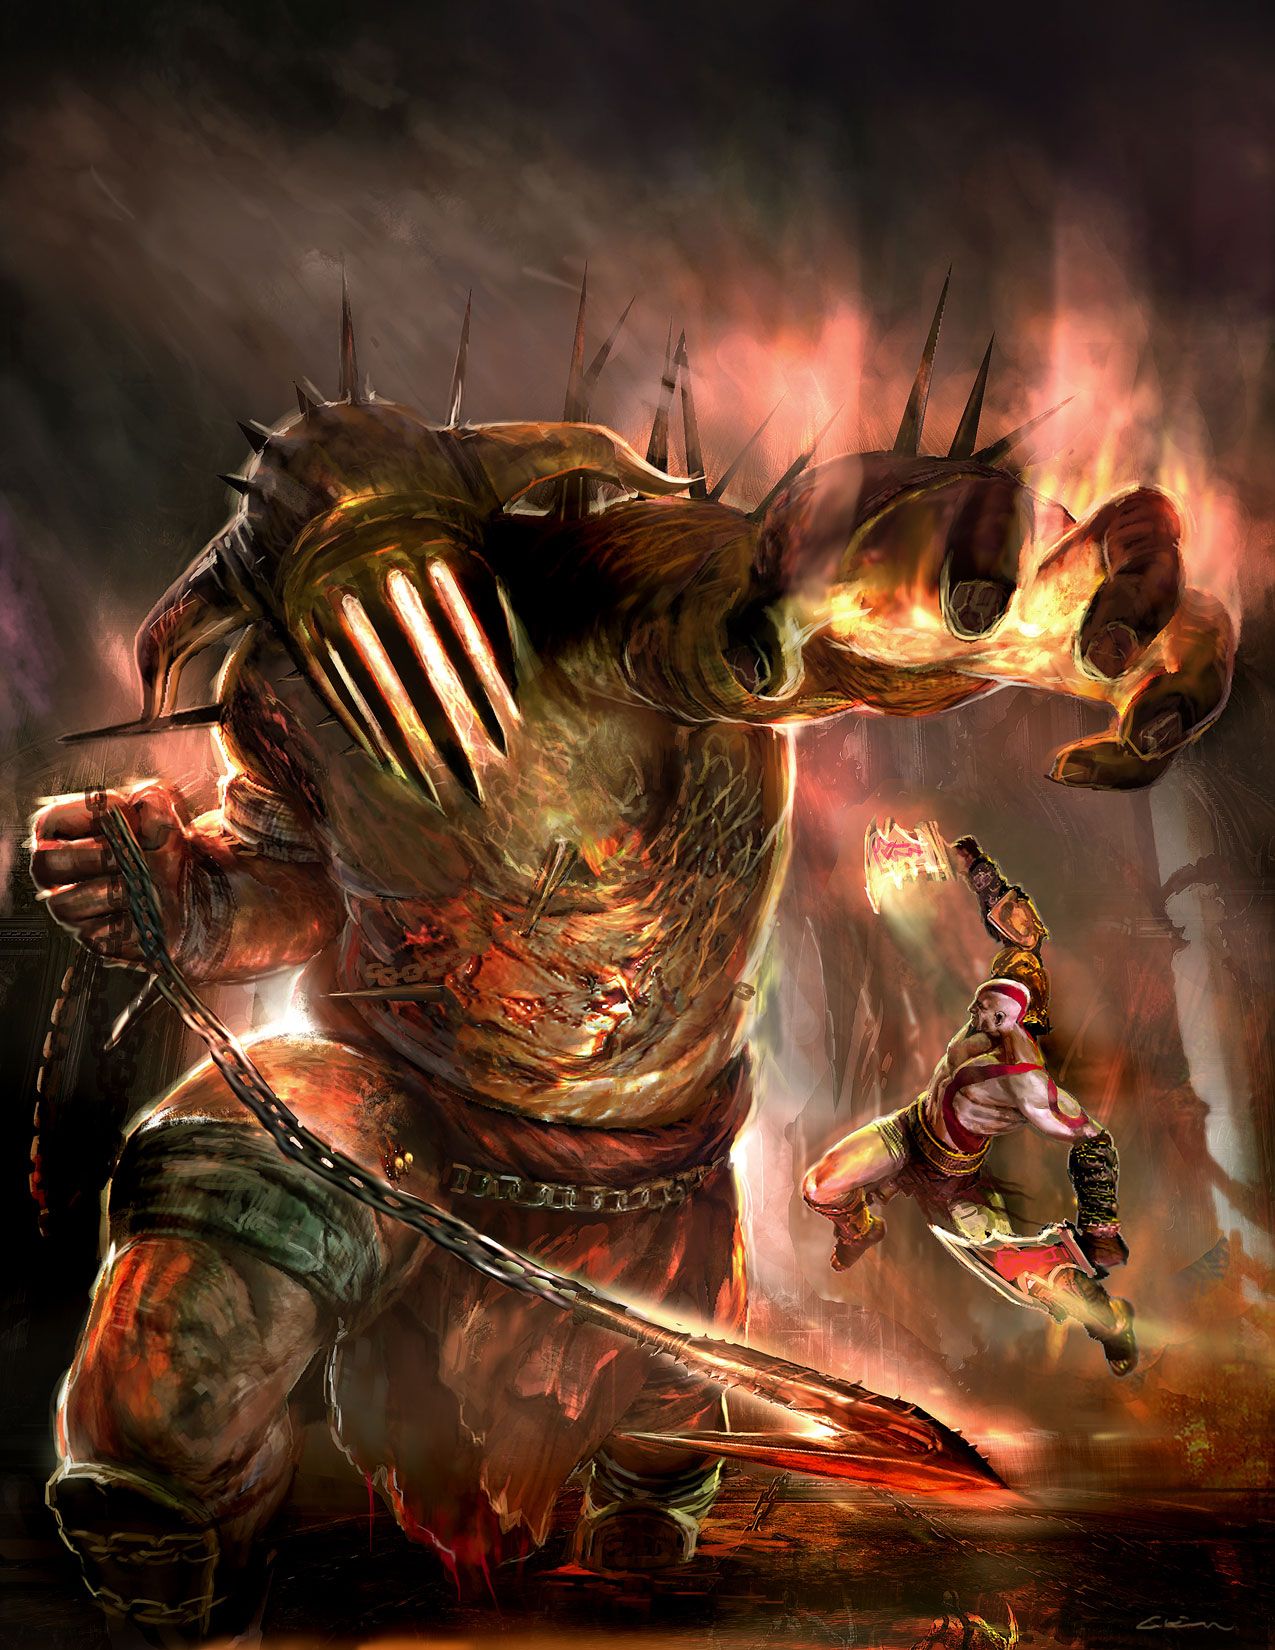 Official PlayStation Magazine Cover Art of War III Art Gallery. God of war, Kratos god of war, God of war series